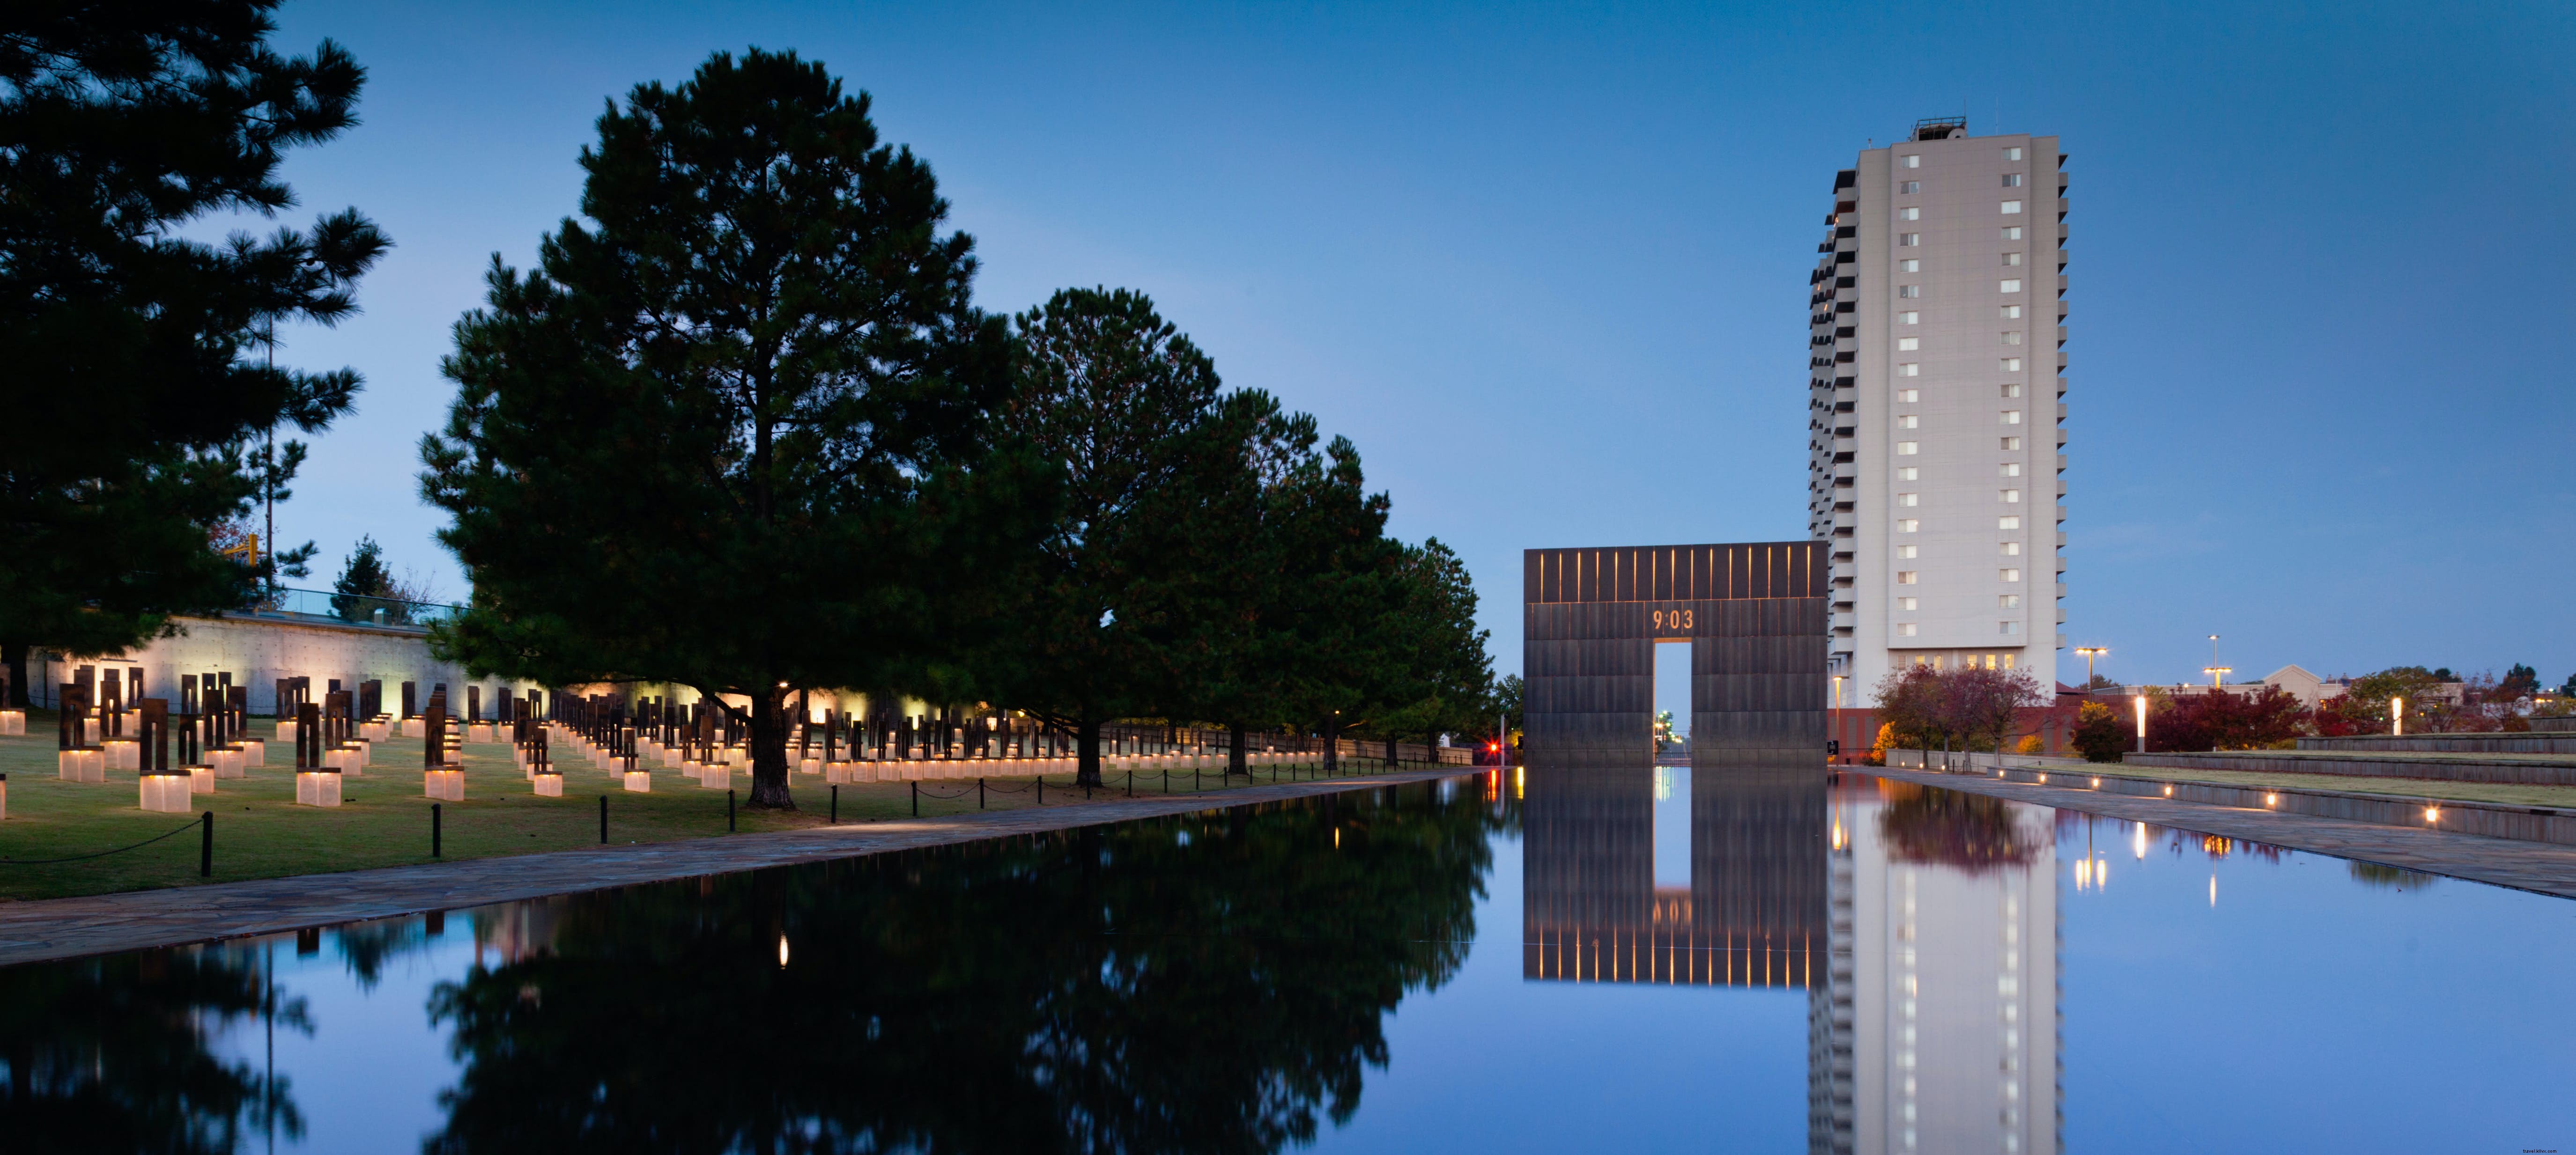 Museo Memorial Nacional de la ciudad de Oklahoma 